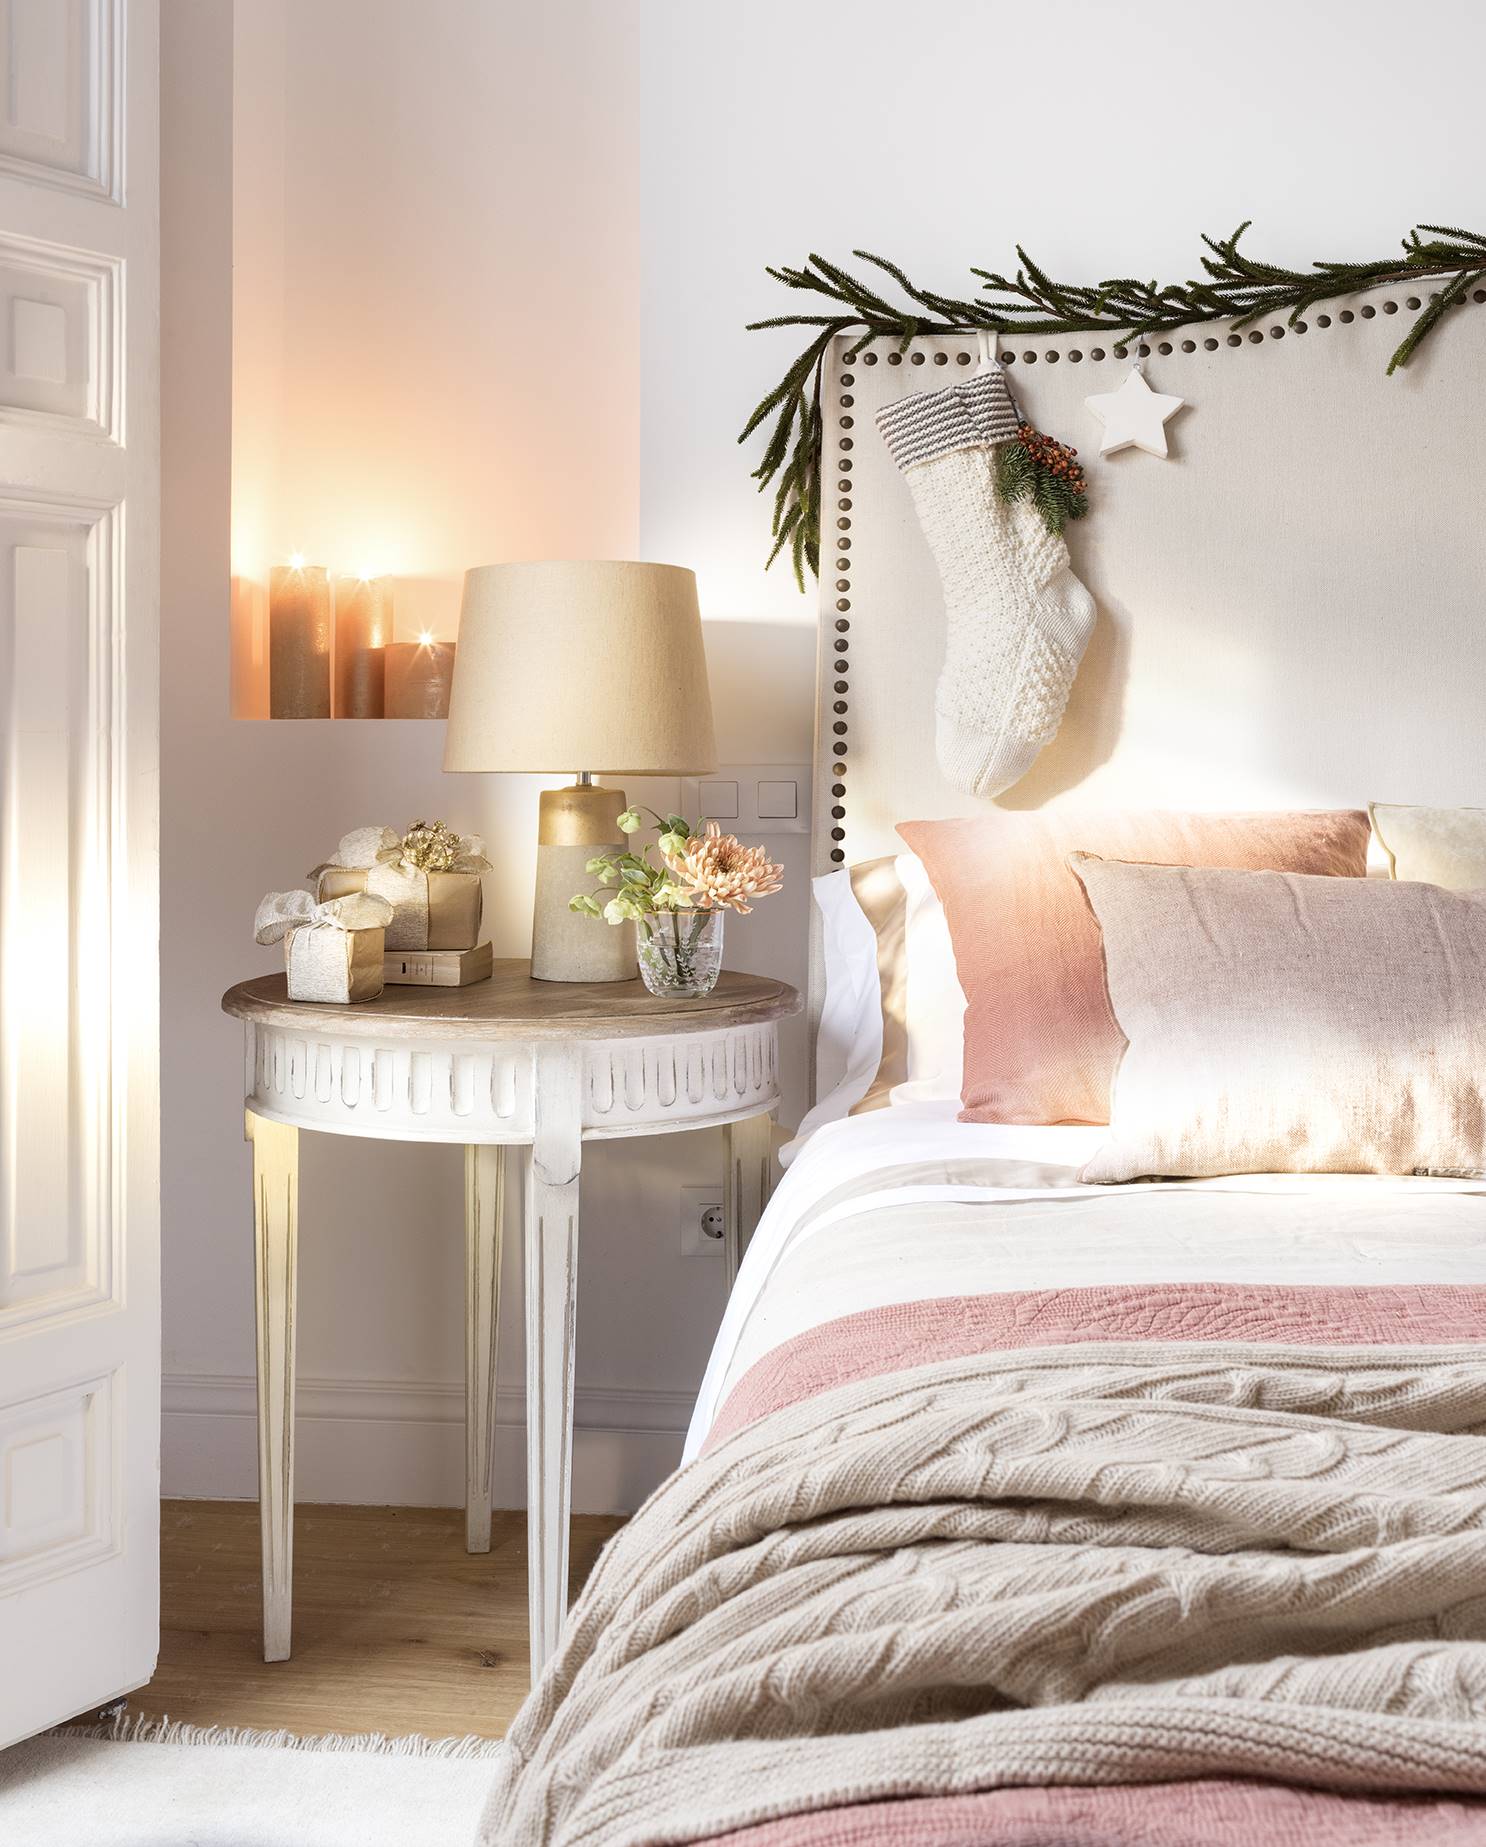 Dormitorio con cabecero decorado de Navidad.